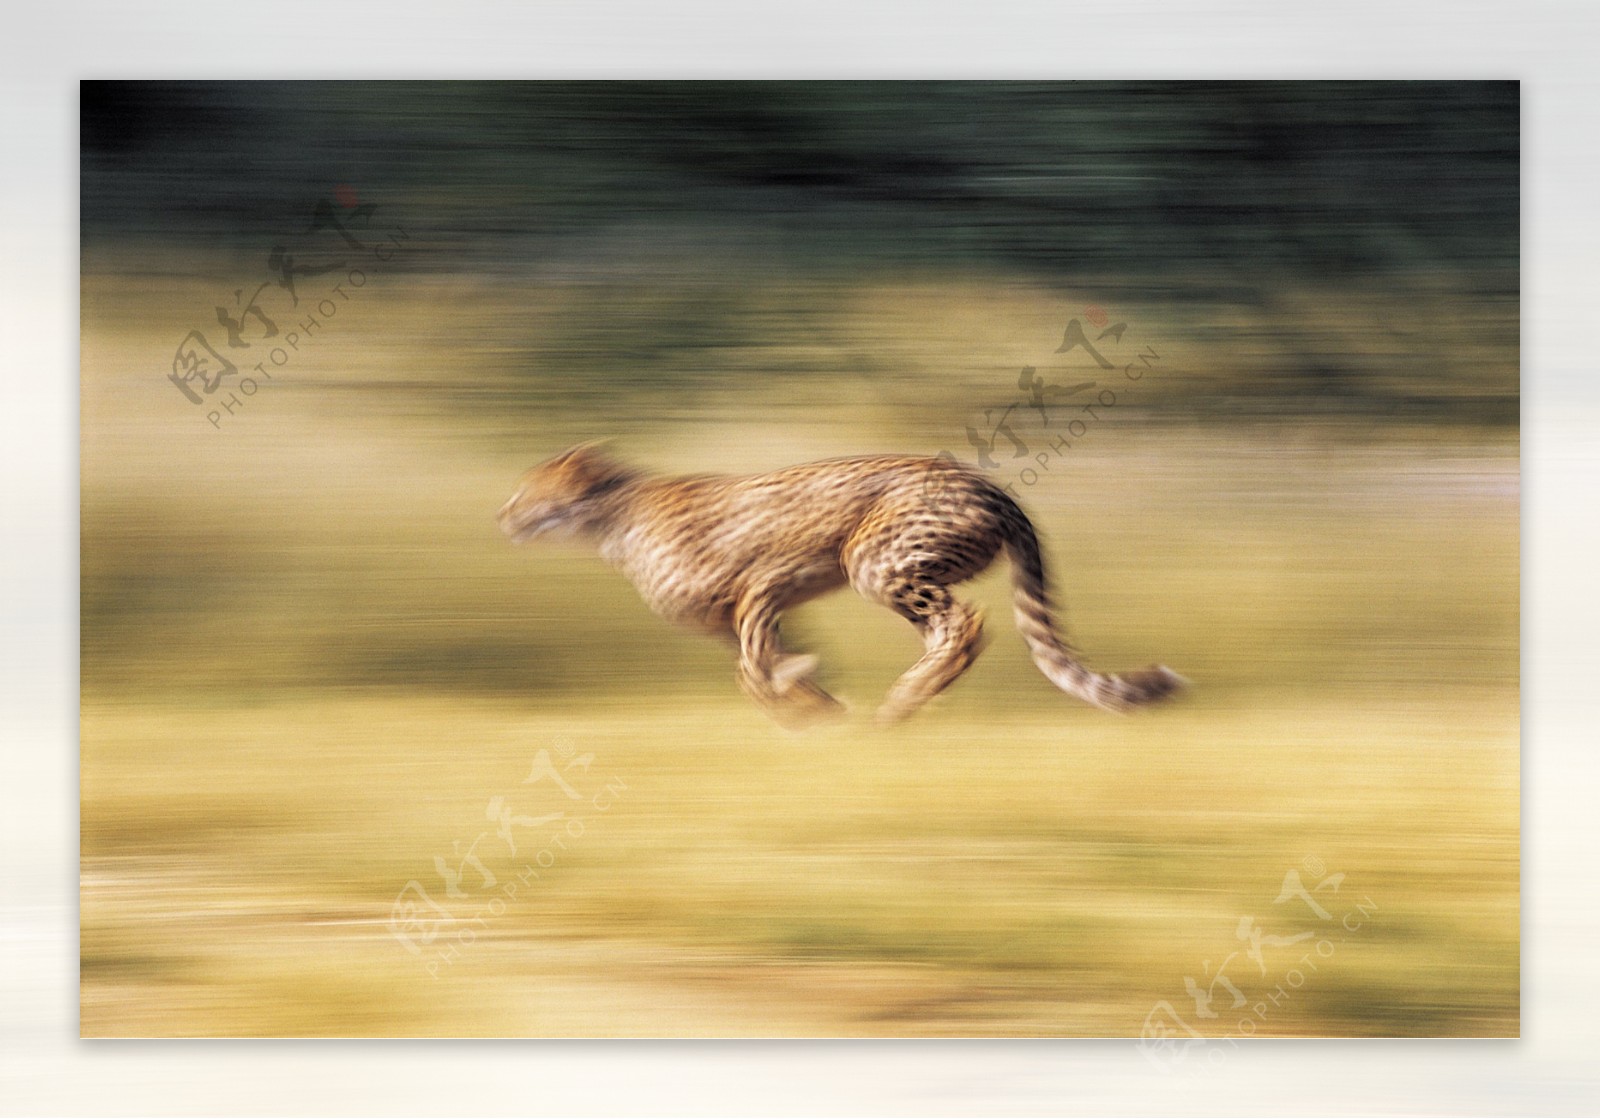 奔跑的猎豹图片